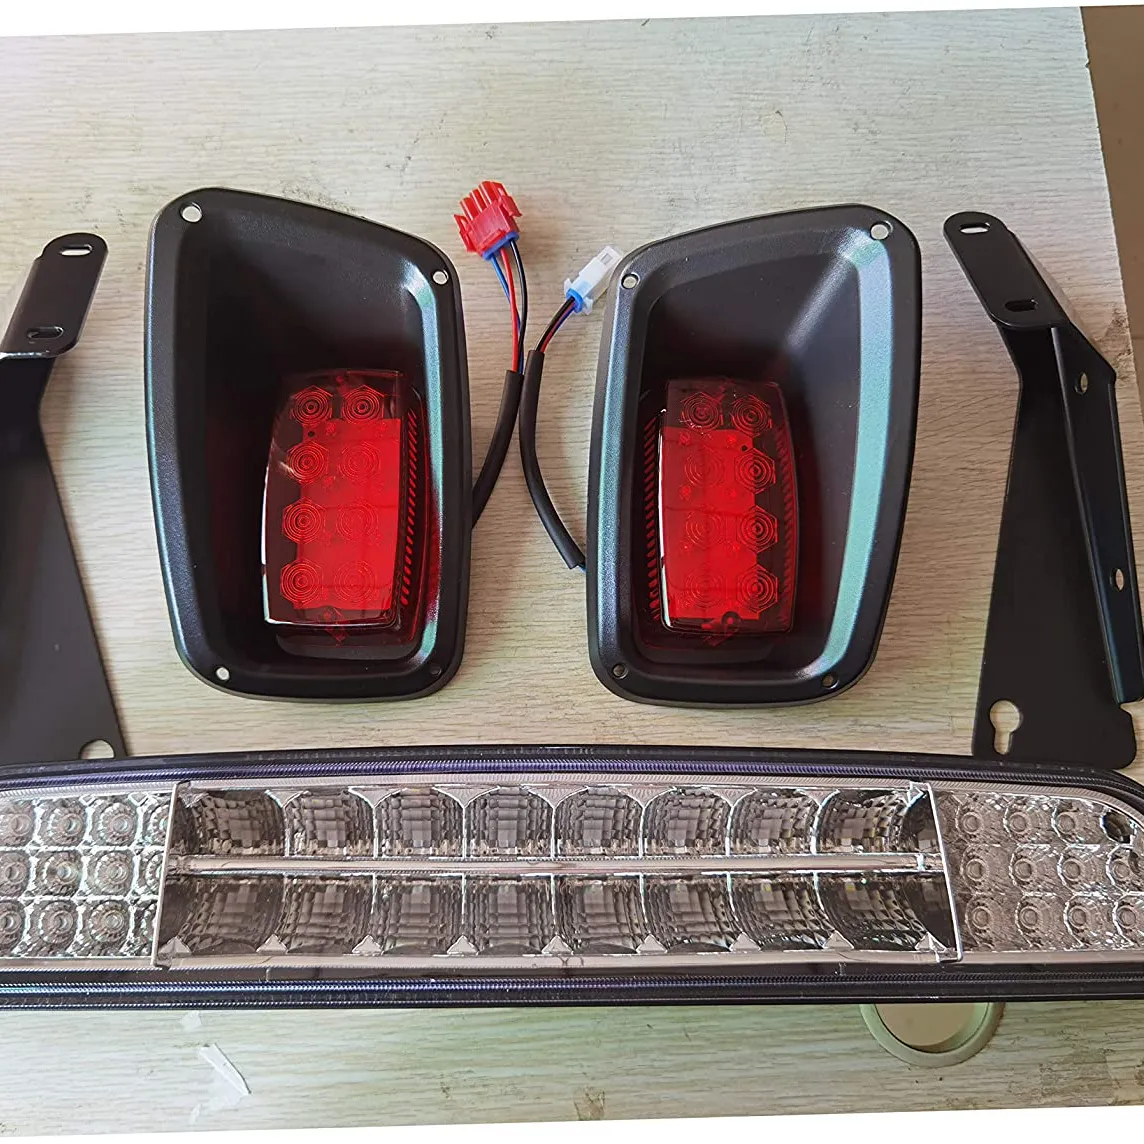 EZGO ชุดไฟ TXT 1996-2013หัวกอล์ฟ,ชุดไฟท้ายไฟหน้า LED พร้อมคำแนะนำในการติดตั้งใช้แก๊สและไฟฟ้าสำหรับรถกอล์ฟ